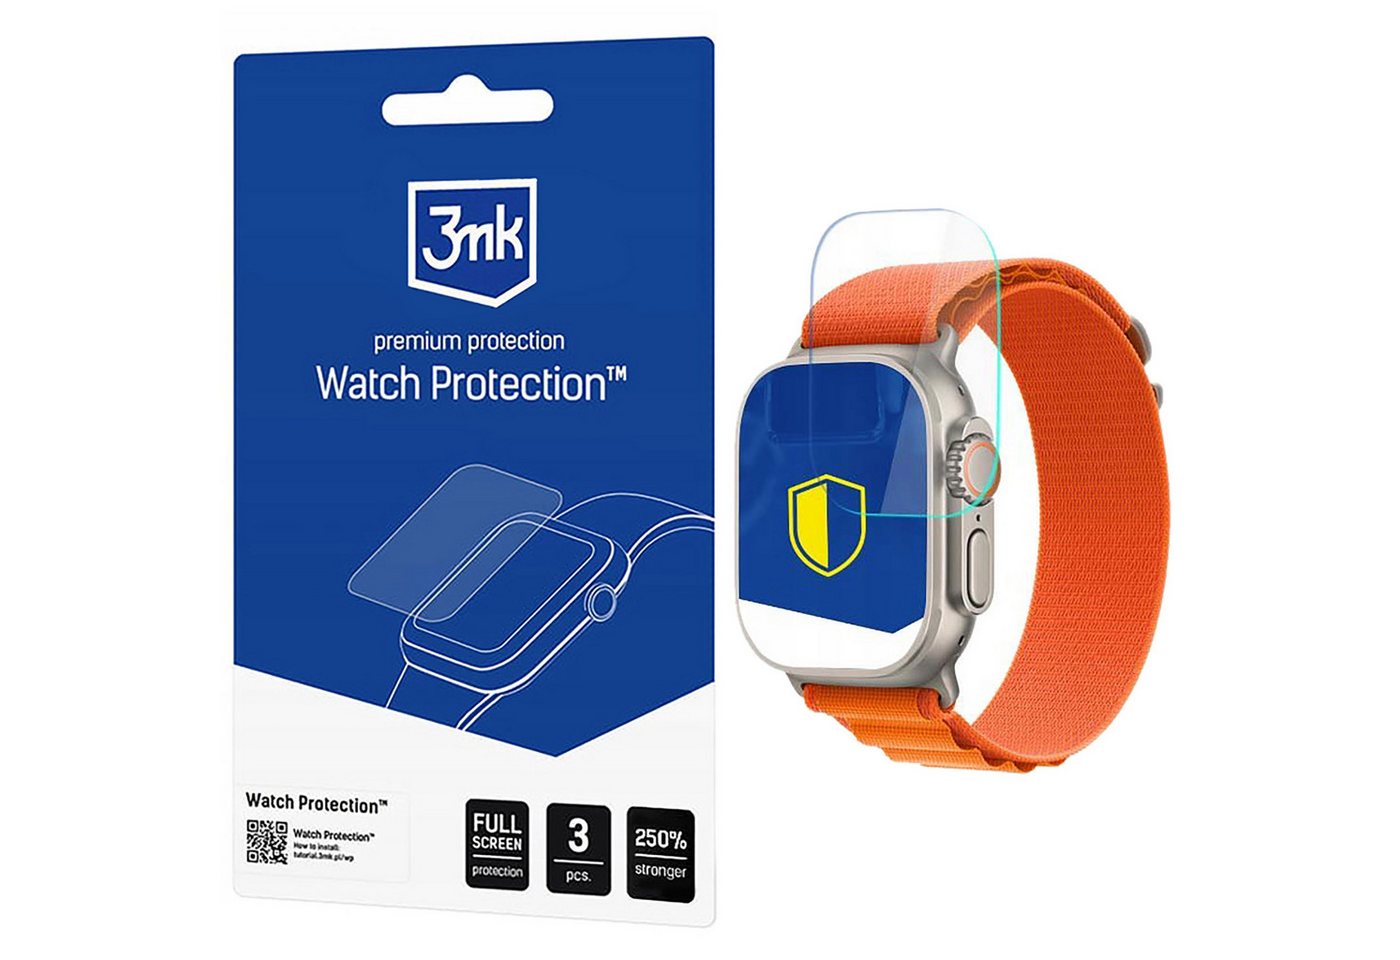 Sarcia.eu Schutzfolie Display-Schutz für die Apple Watch Ultra - 3mk Watch Protection von Sarcia.eu